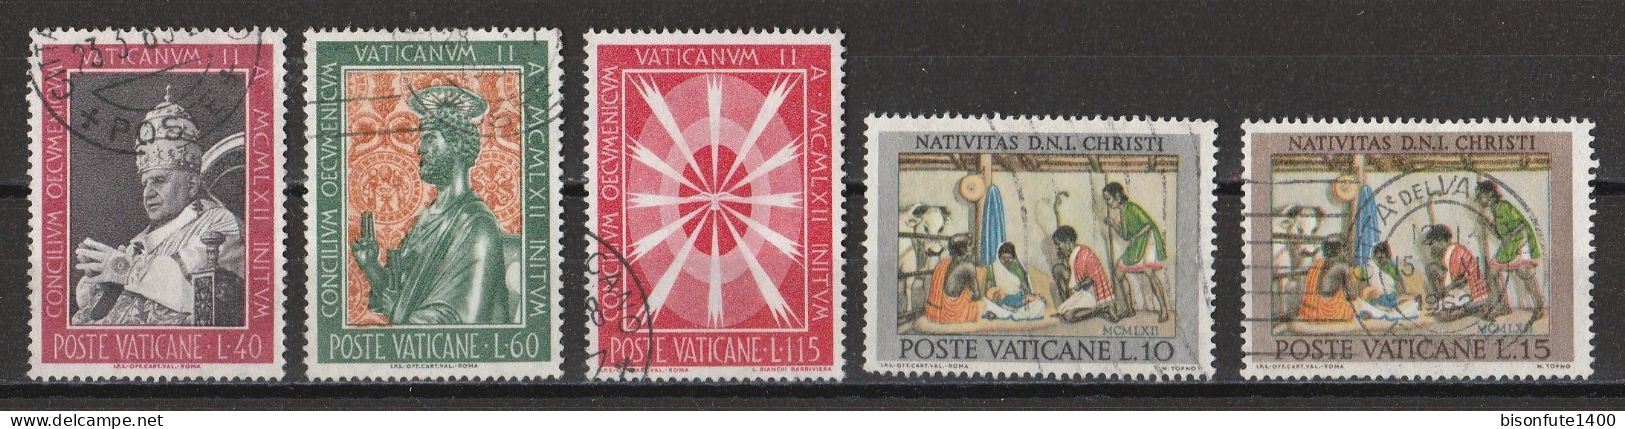 Vatican 1962 : Timbres Yvert & Tellier N° 357 - 358 - 360 - 364 - 366 - 367 - 368 - 369 - 370 - 371 Et 372 Oblitérés. - Gebruikt